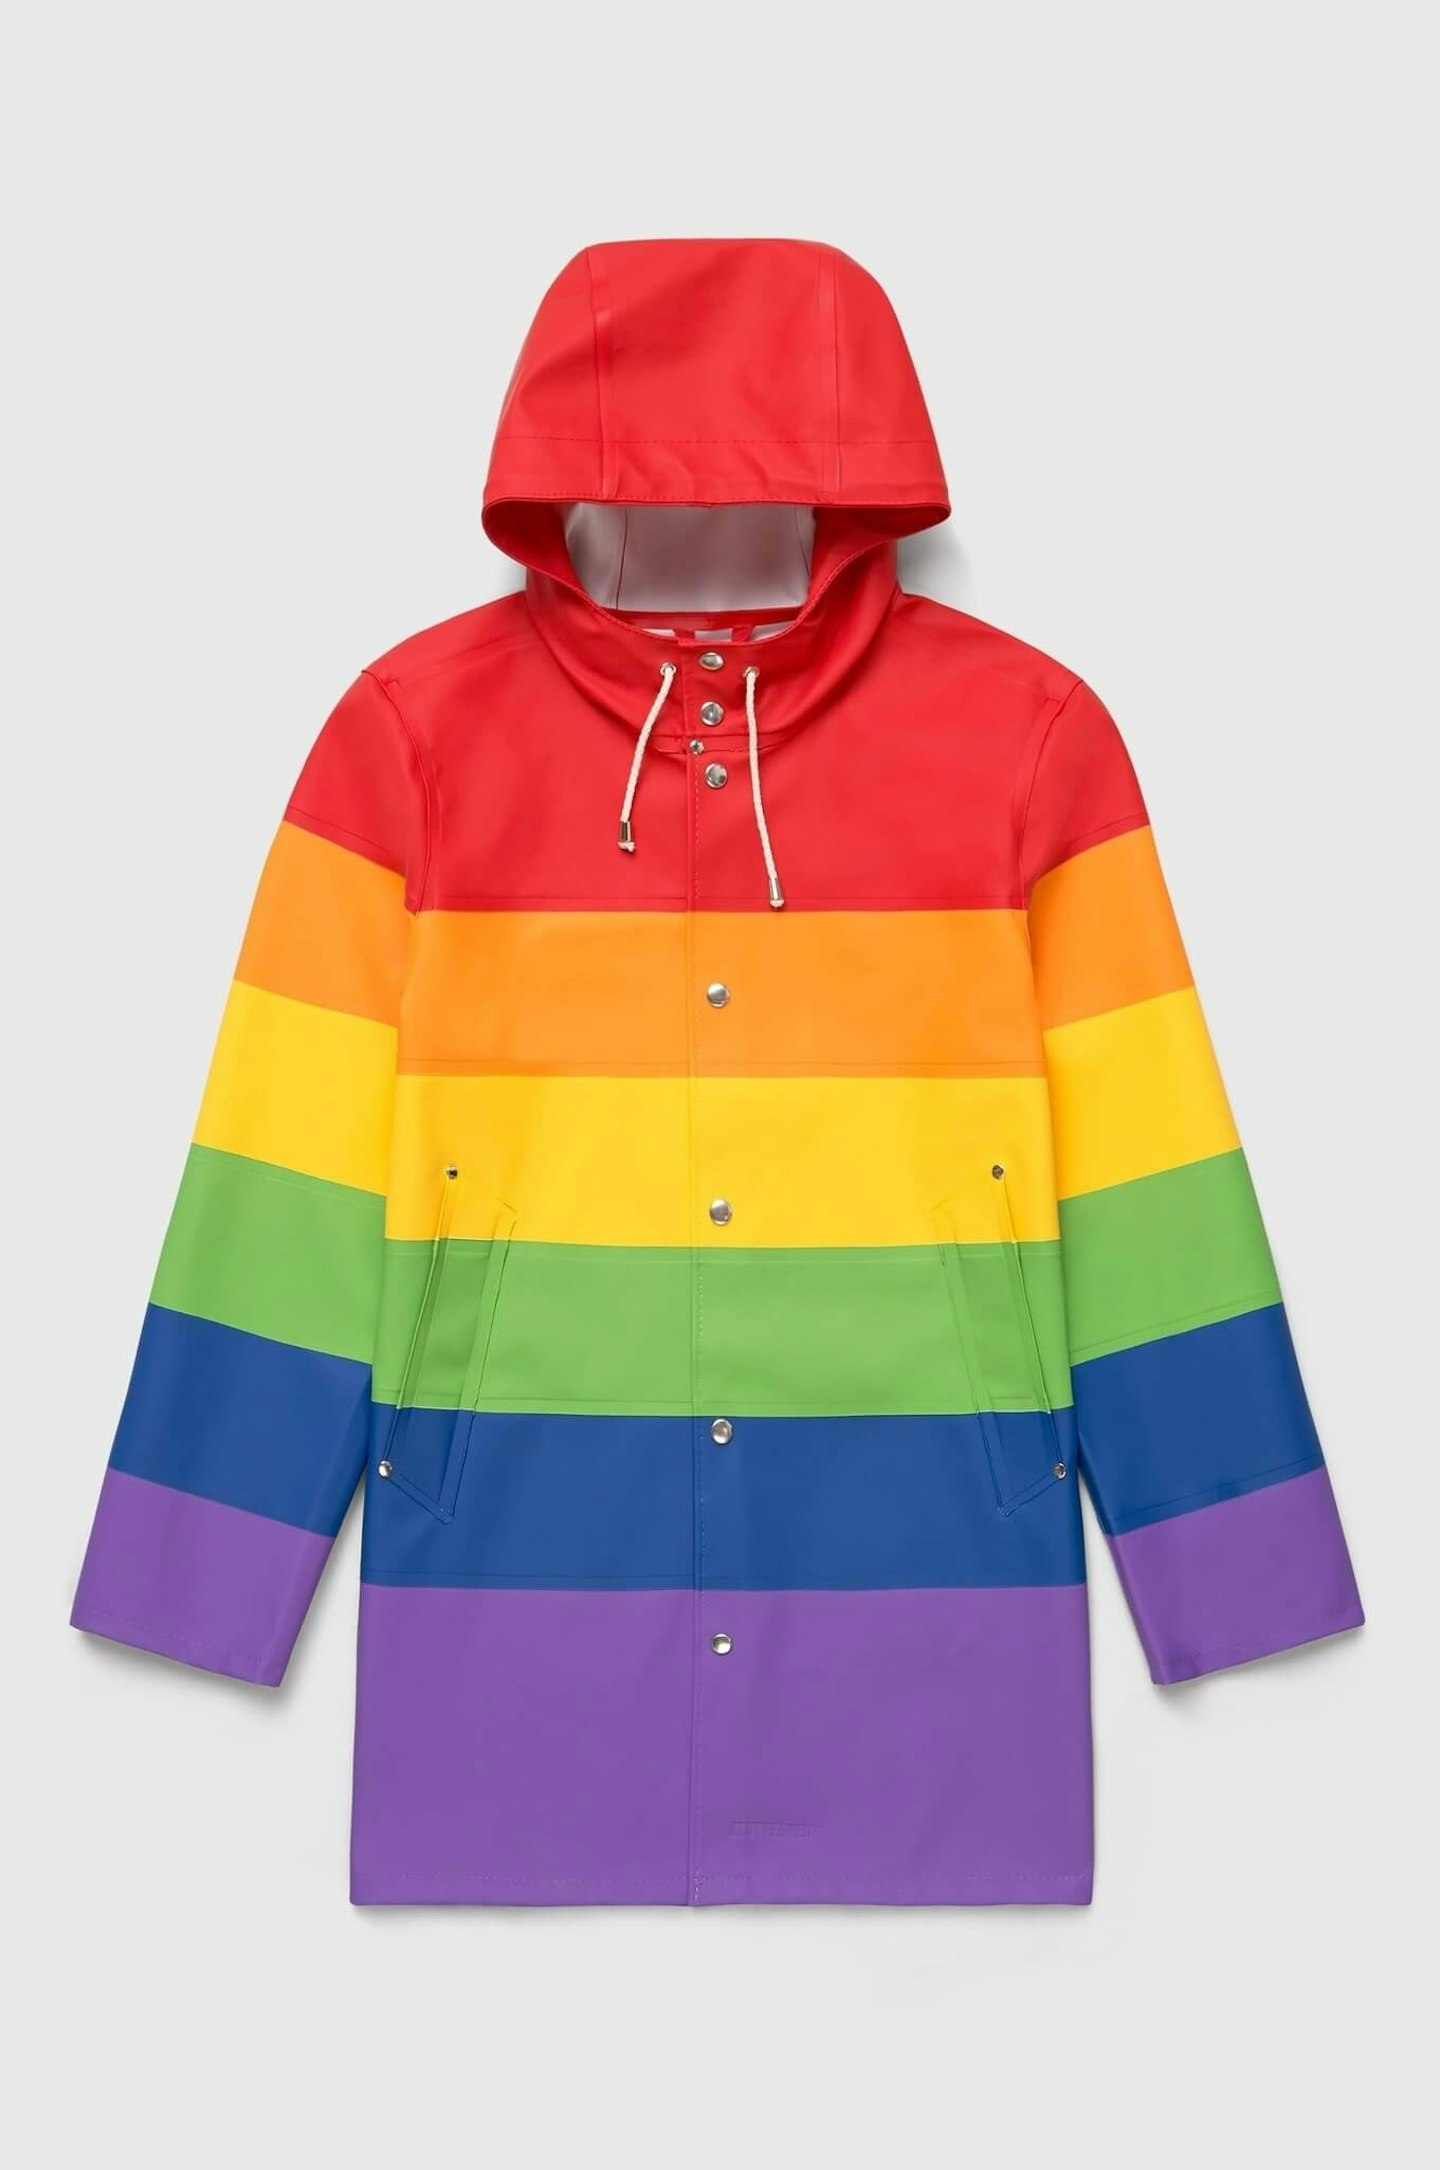 LGBTQ+ pride month fashion